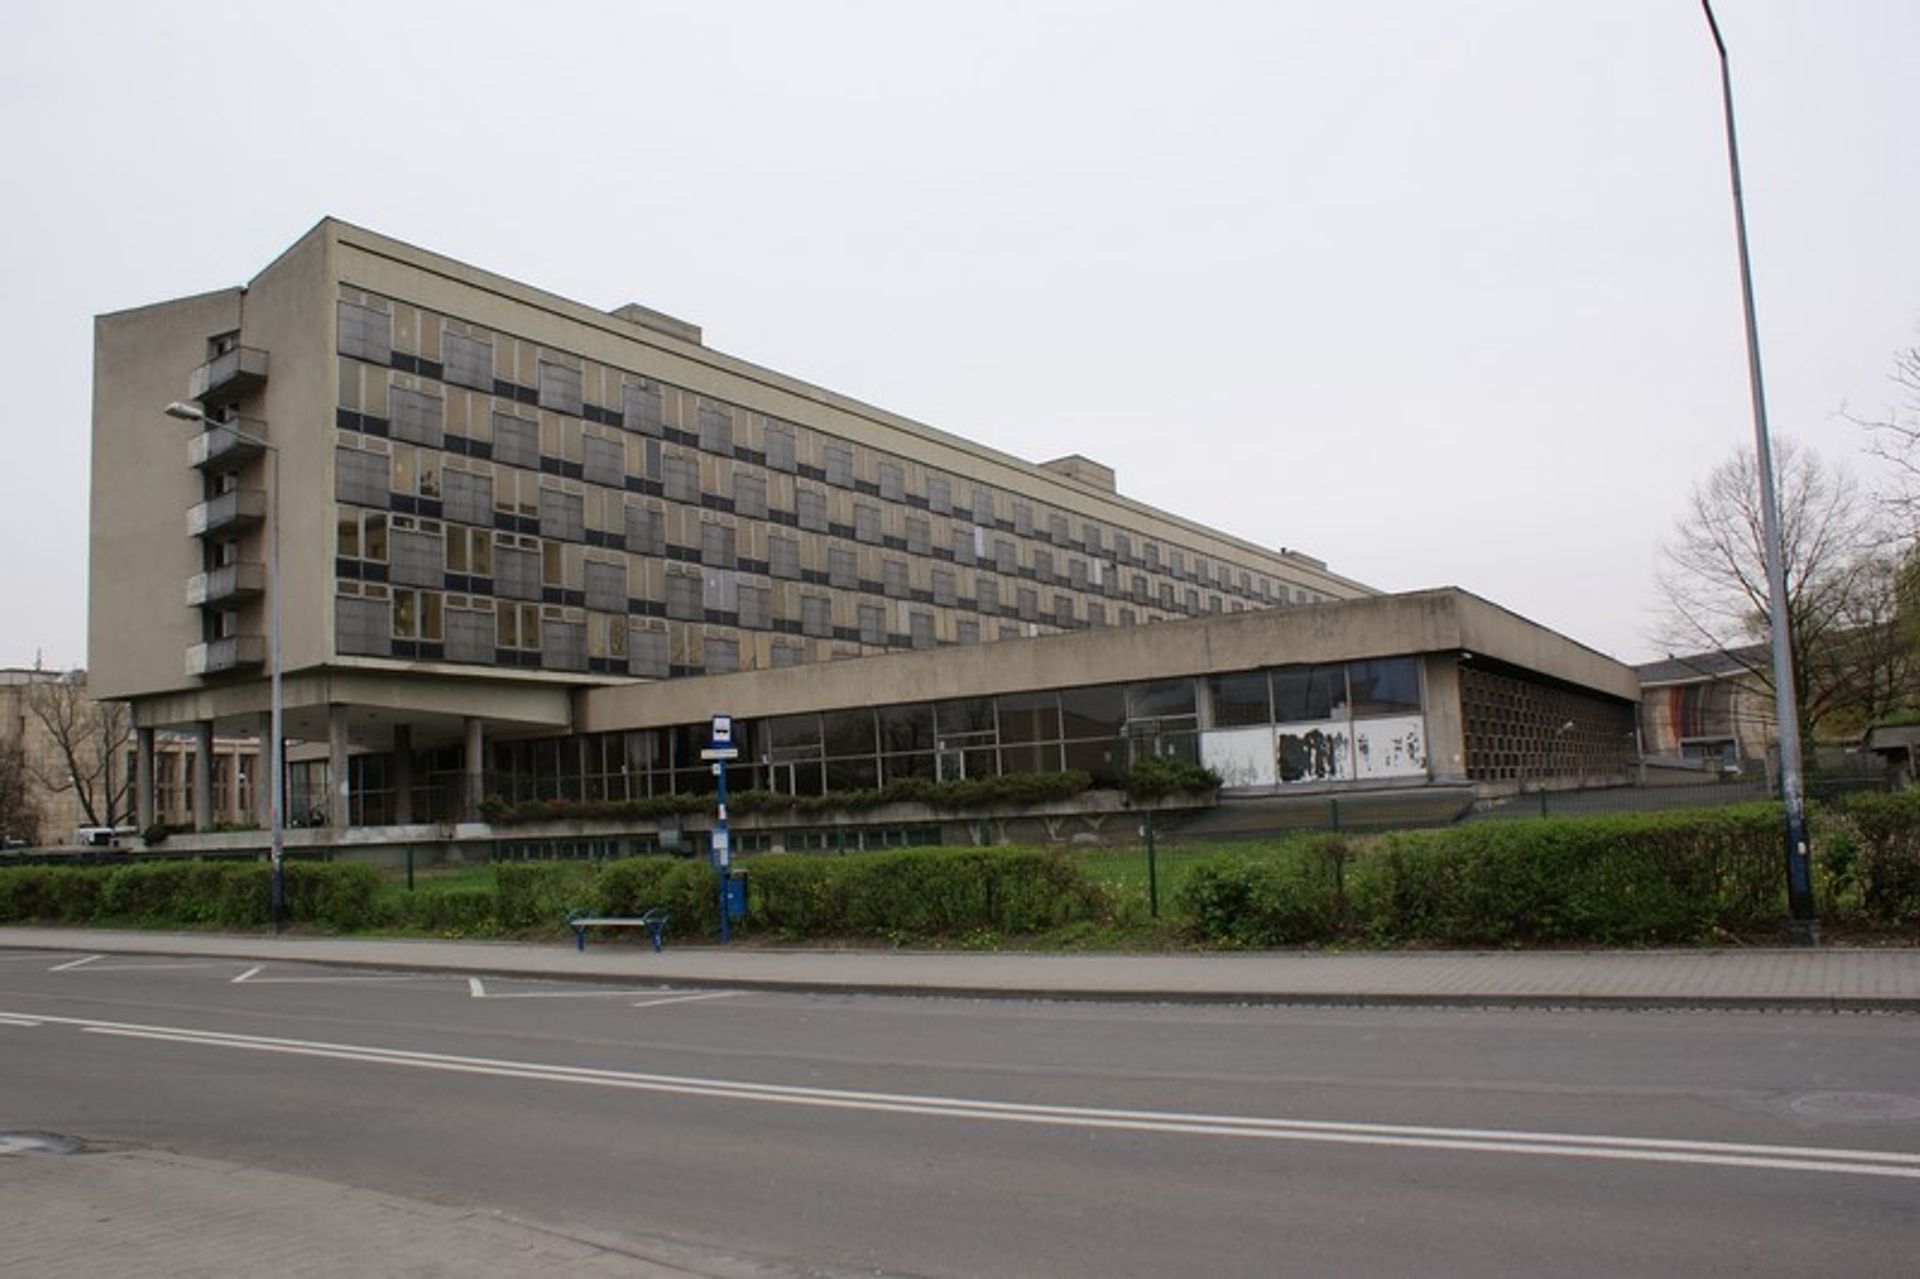  Dawny hotel Cracovia trafi do rejestru zabytków. Co na to inwestor?